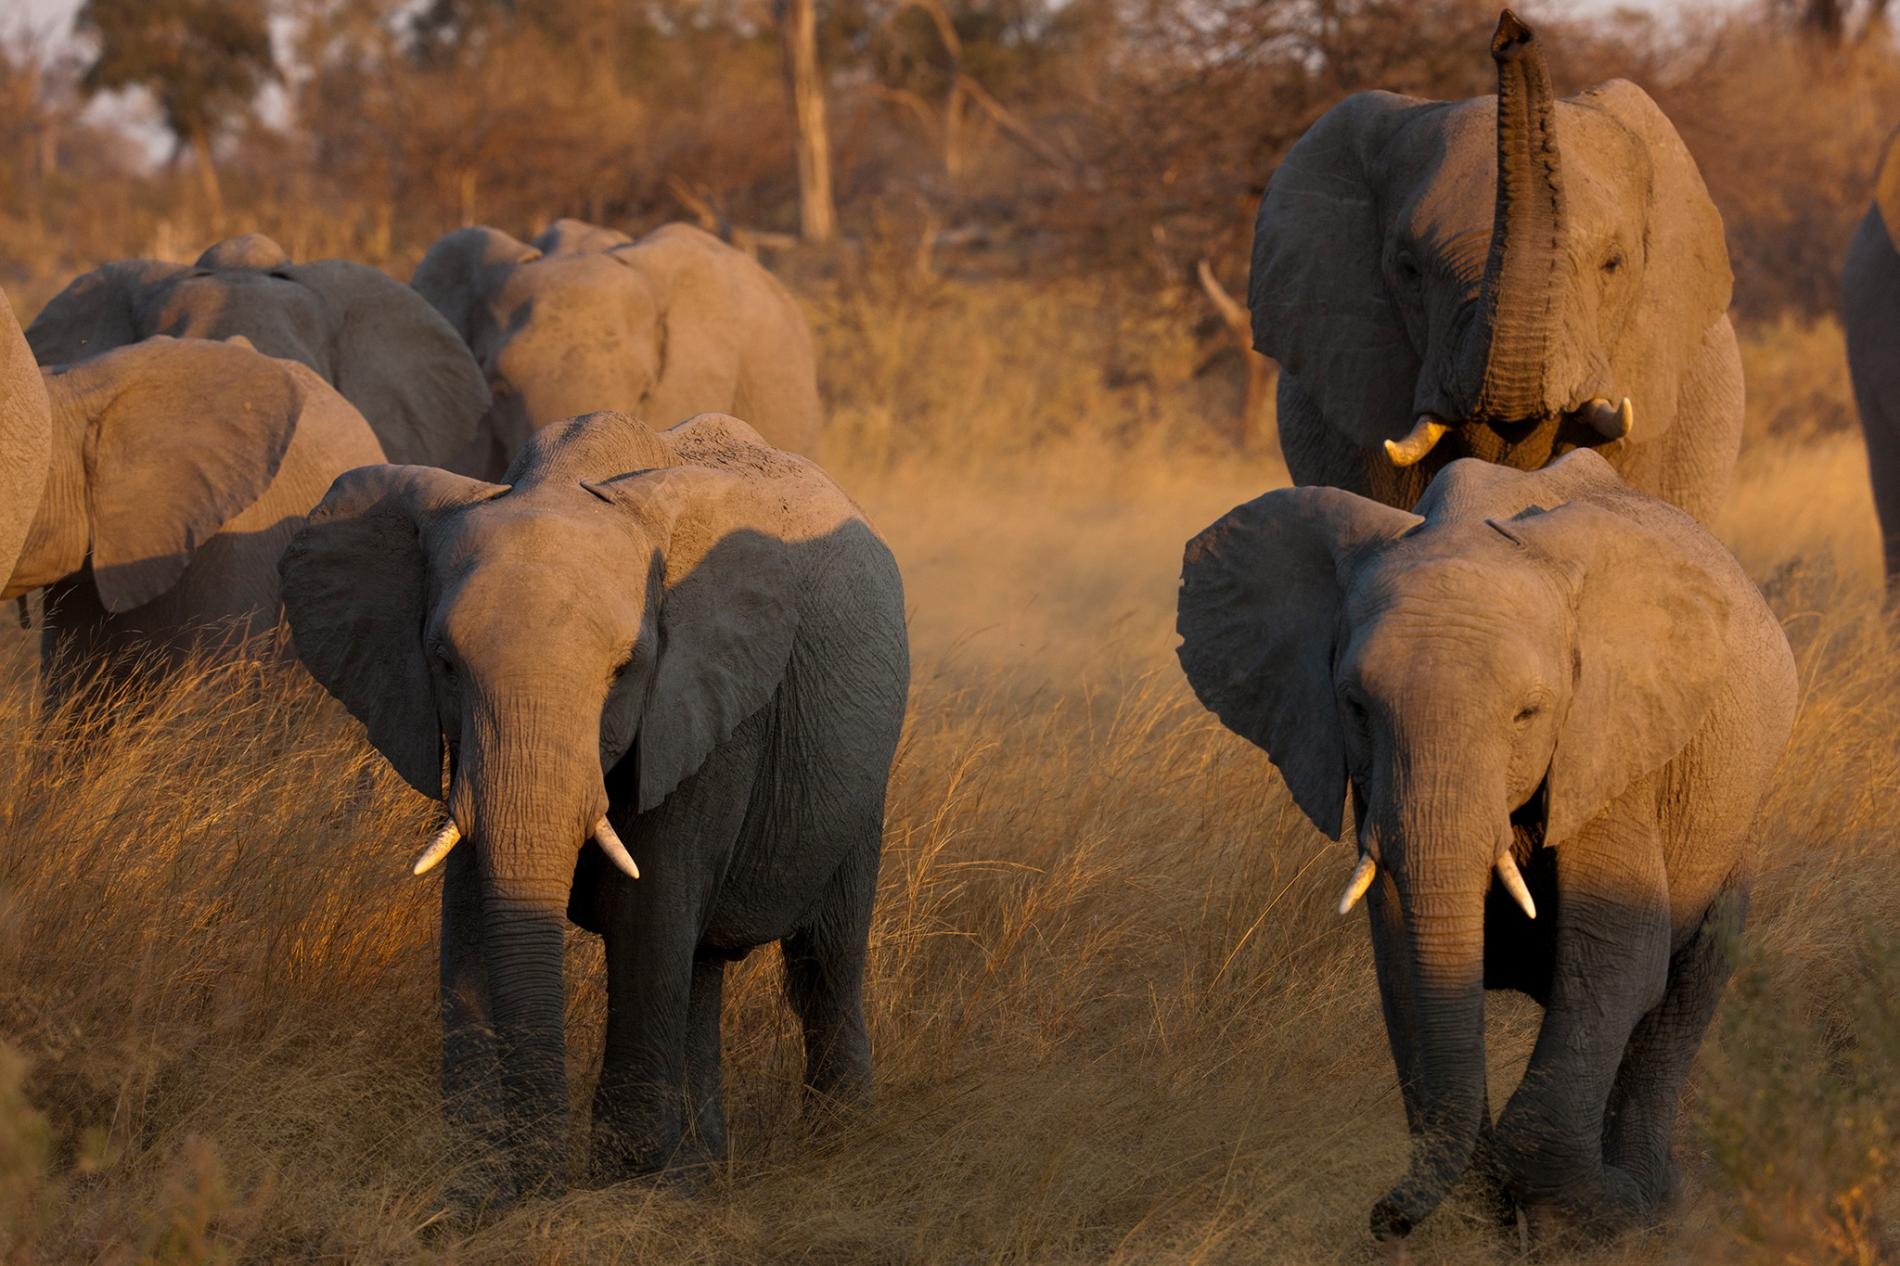 因為象牙的關係，非洲的大象一直遭到盜獵。新資料顯示，光是提升執法強度不足以解決這個問題。想保護地球上體型最大的陸生哺乳動物，也必須設法解決貧窮問題。PHOTOGRAPH BY BEVERLY JOUBERT, NAT GEO IMAGE COLLECTION